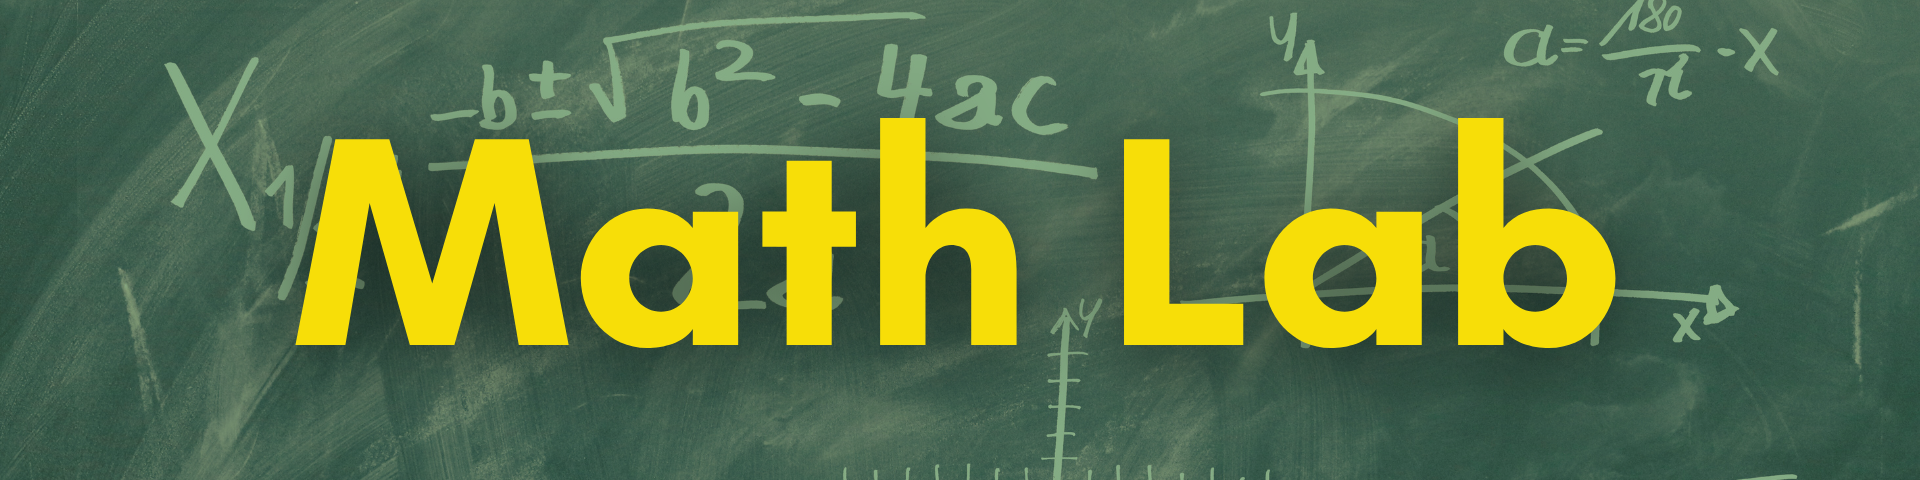 Math Lab Tutoring Resources